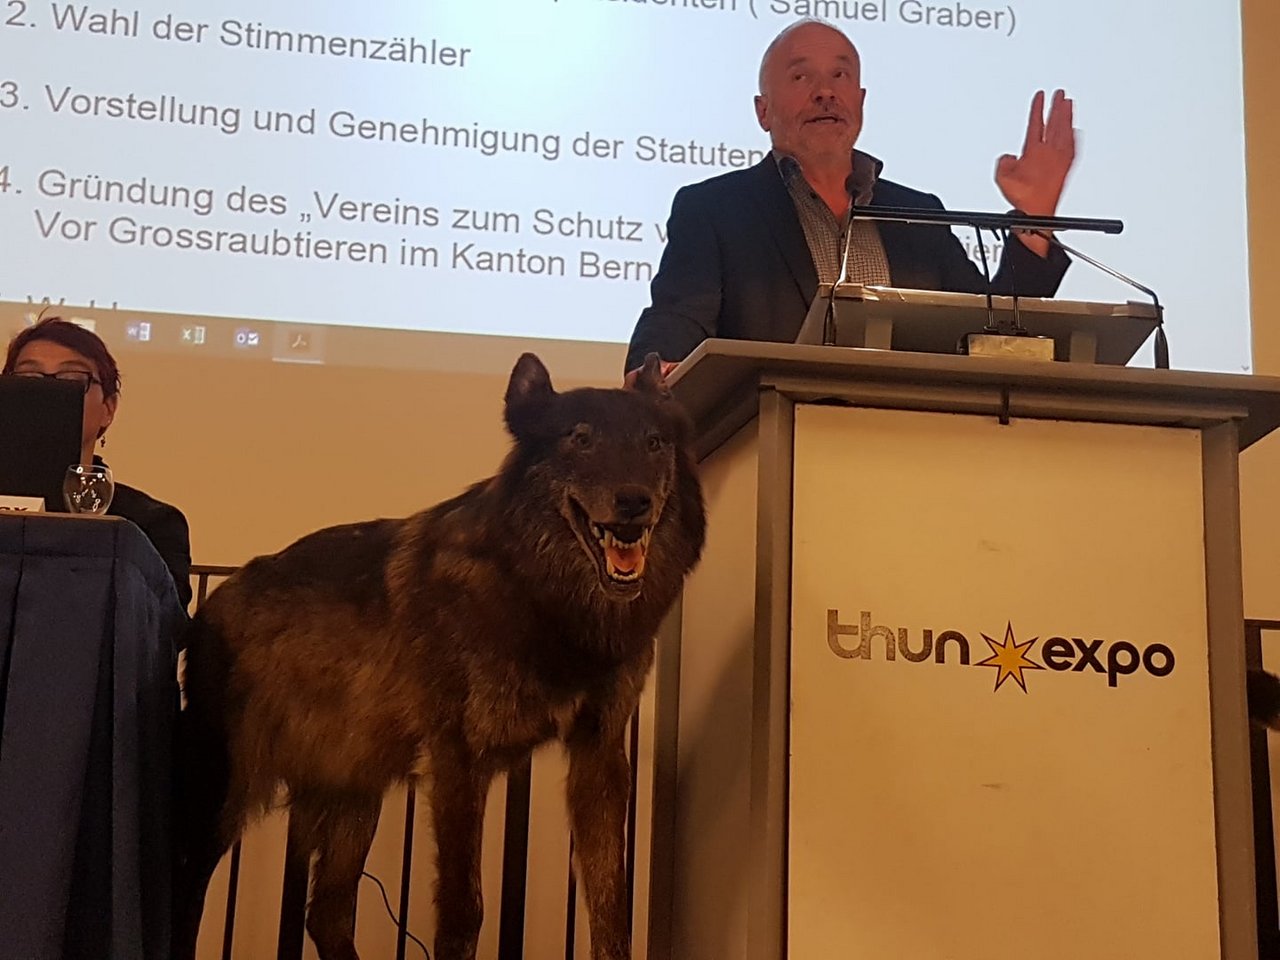 In Thun begrüsste Tagespräsident Samuel Graber einen Saal voller Wolfsgegner. (Bild dj)